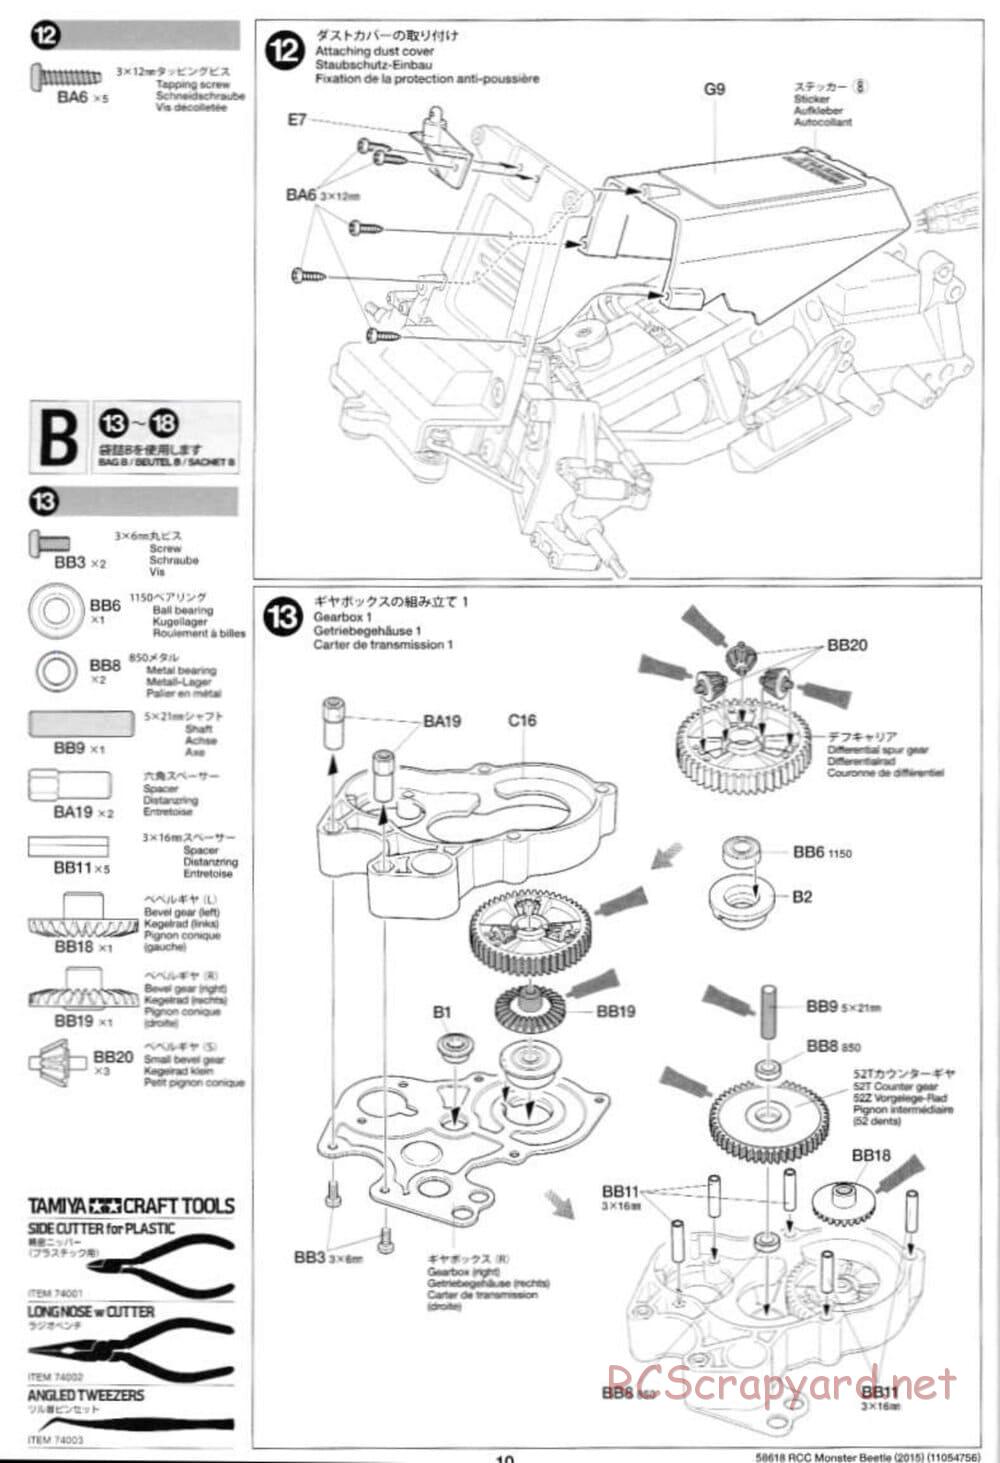 Tamiya - Monster Beetle 2015 - ORV Chassis - Manual - Page 10